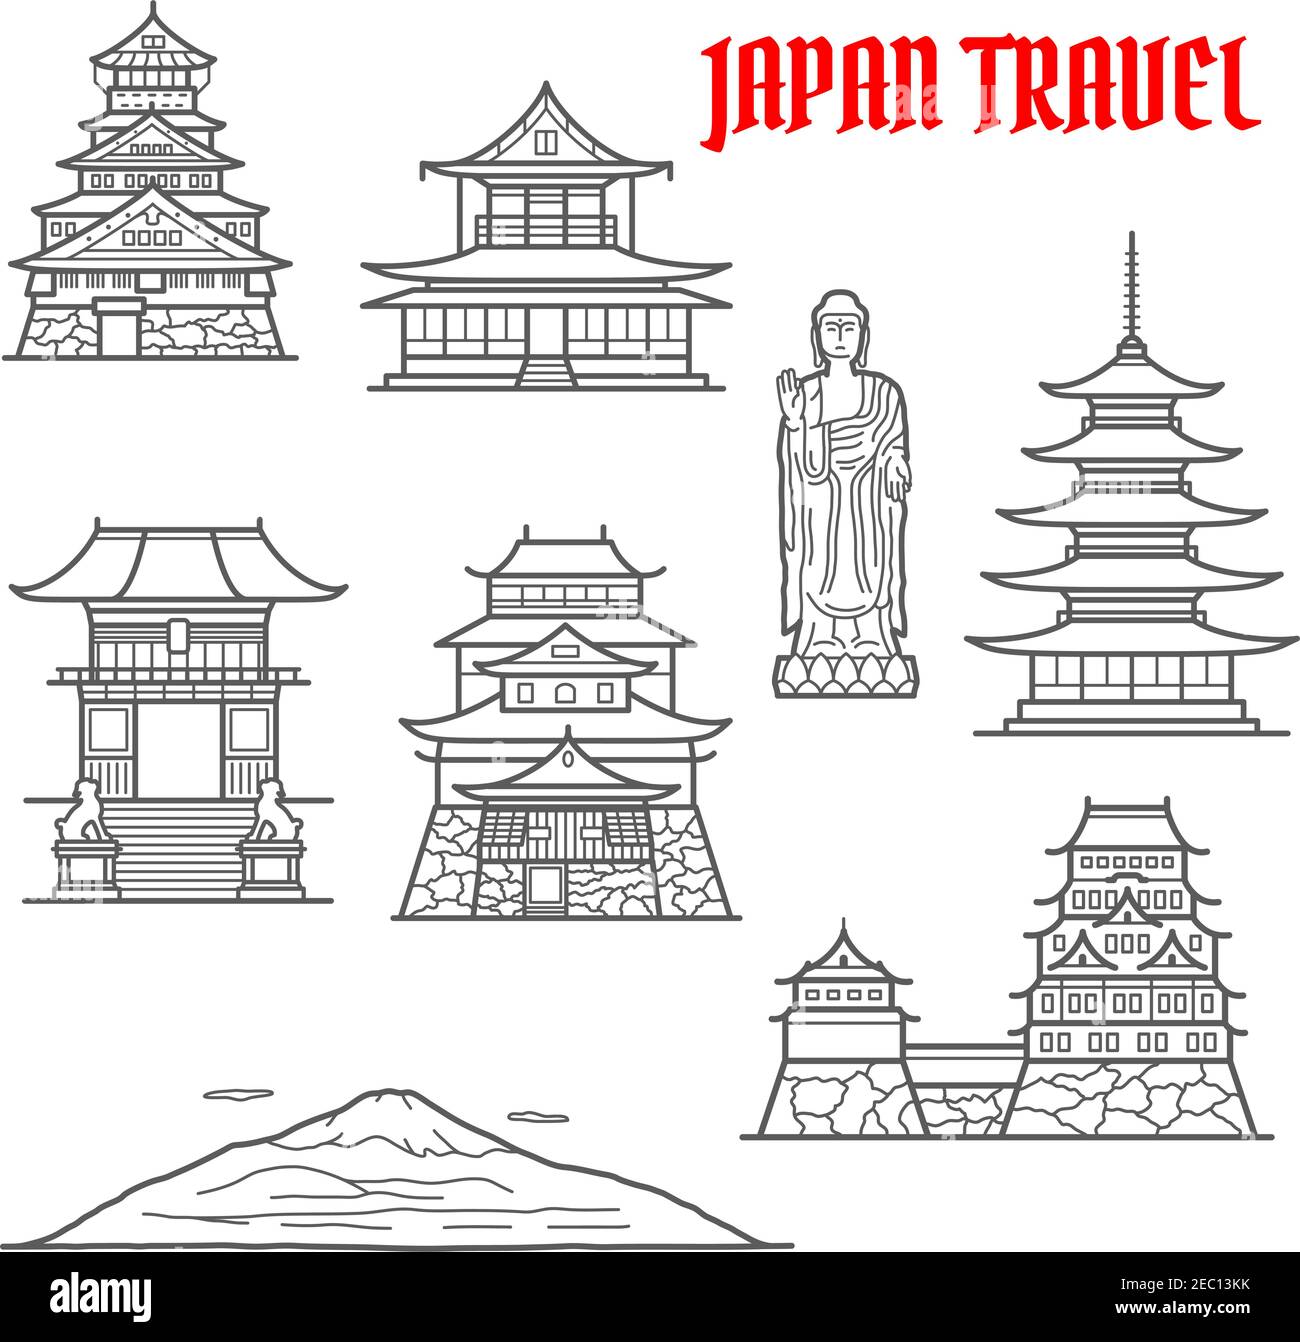 Il Giappone viaggia verso i monumenti simbolo della linea sottile del monte Fuji e del Grande Buddha Ushiku, il palazzo imperiale e il castello di Osaka, la porta deva del tempio Kiyomizu-dera, Illustrazione Vettoriale